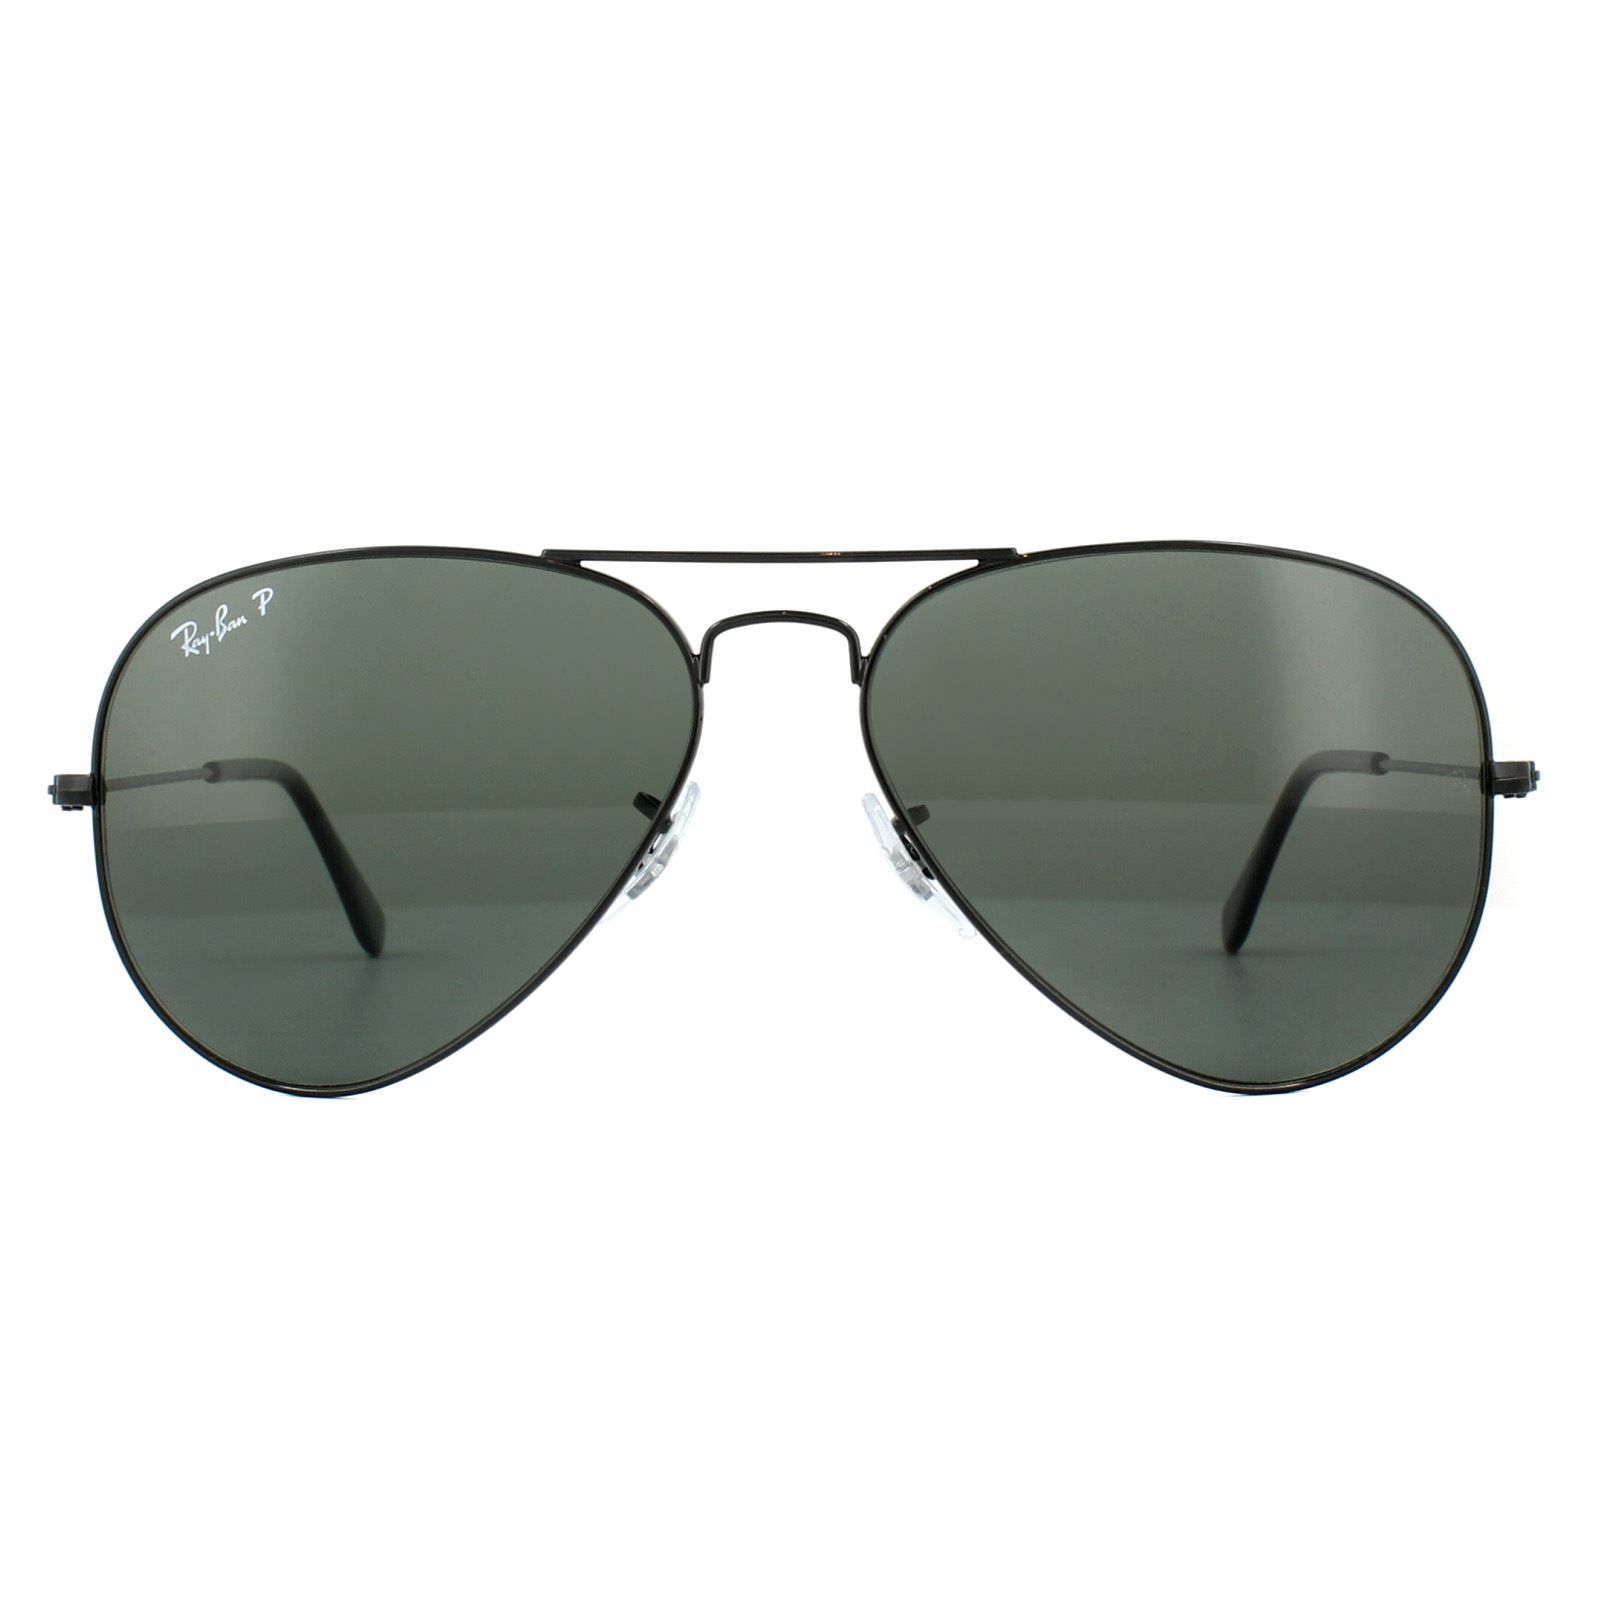 Ray-Ban Sunglasses Aviator 3025 002/58 Black Polarized